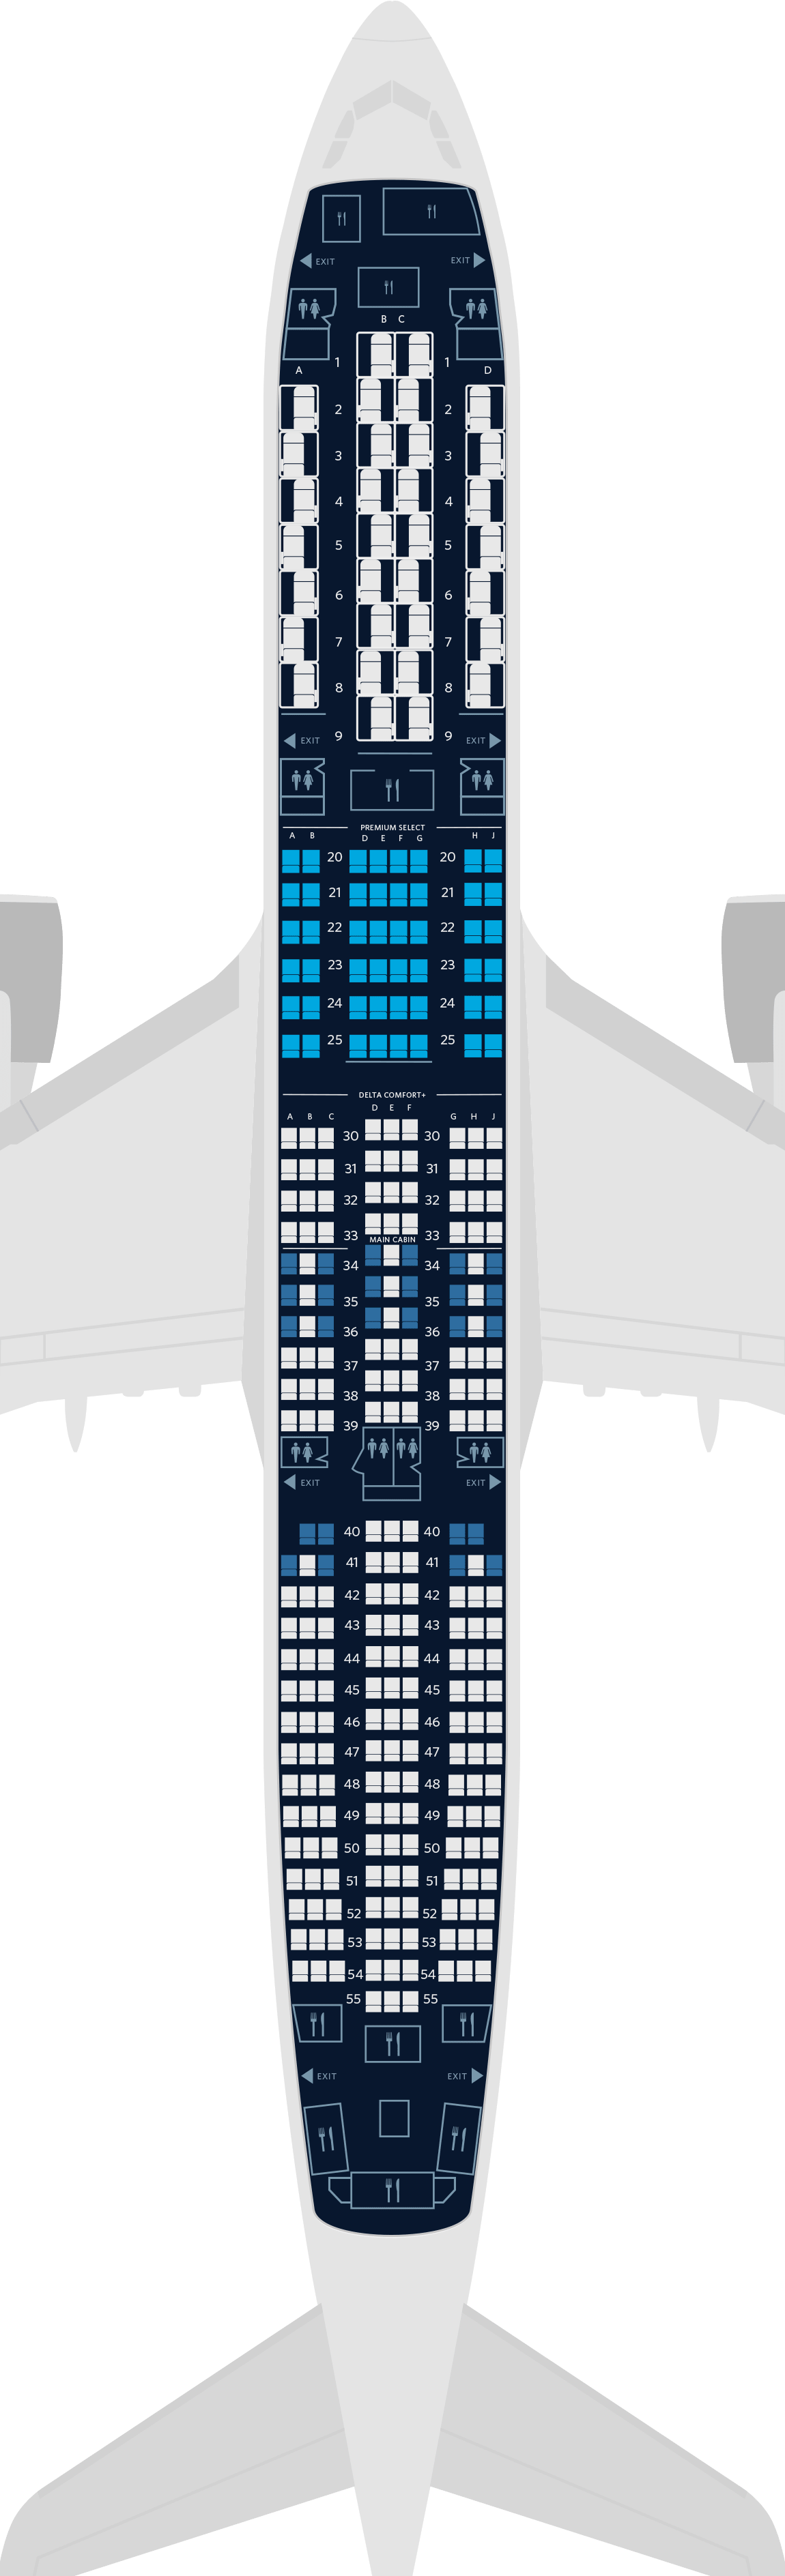  Mapa de asientos del Airbus A350-900 de 4 cabinas